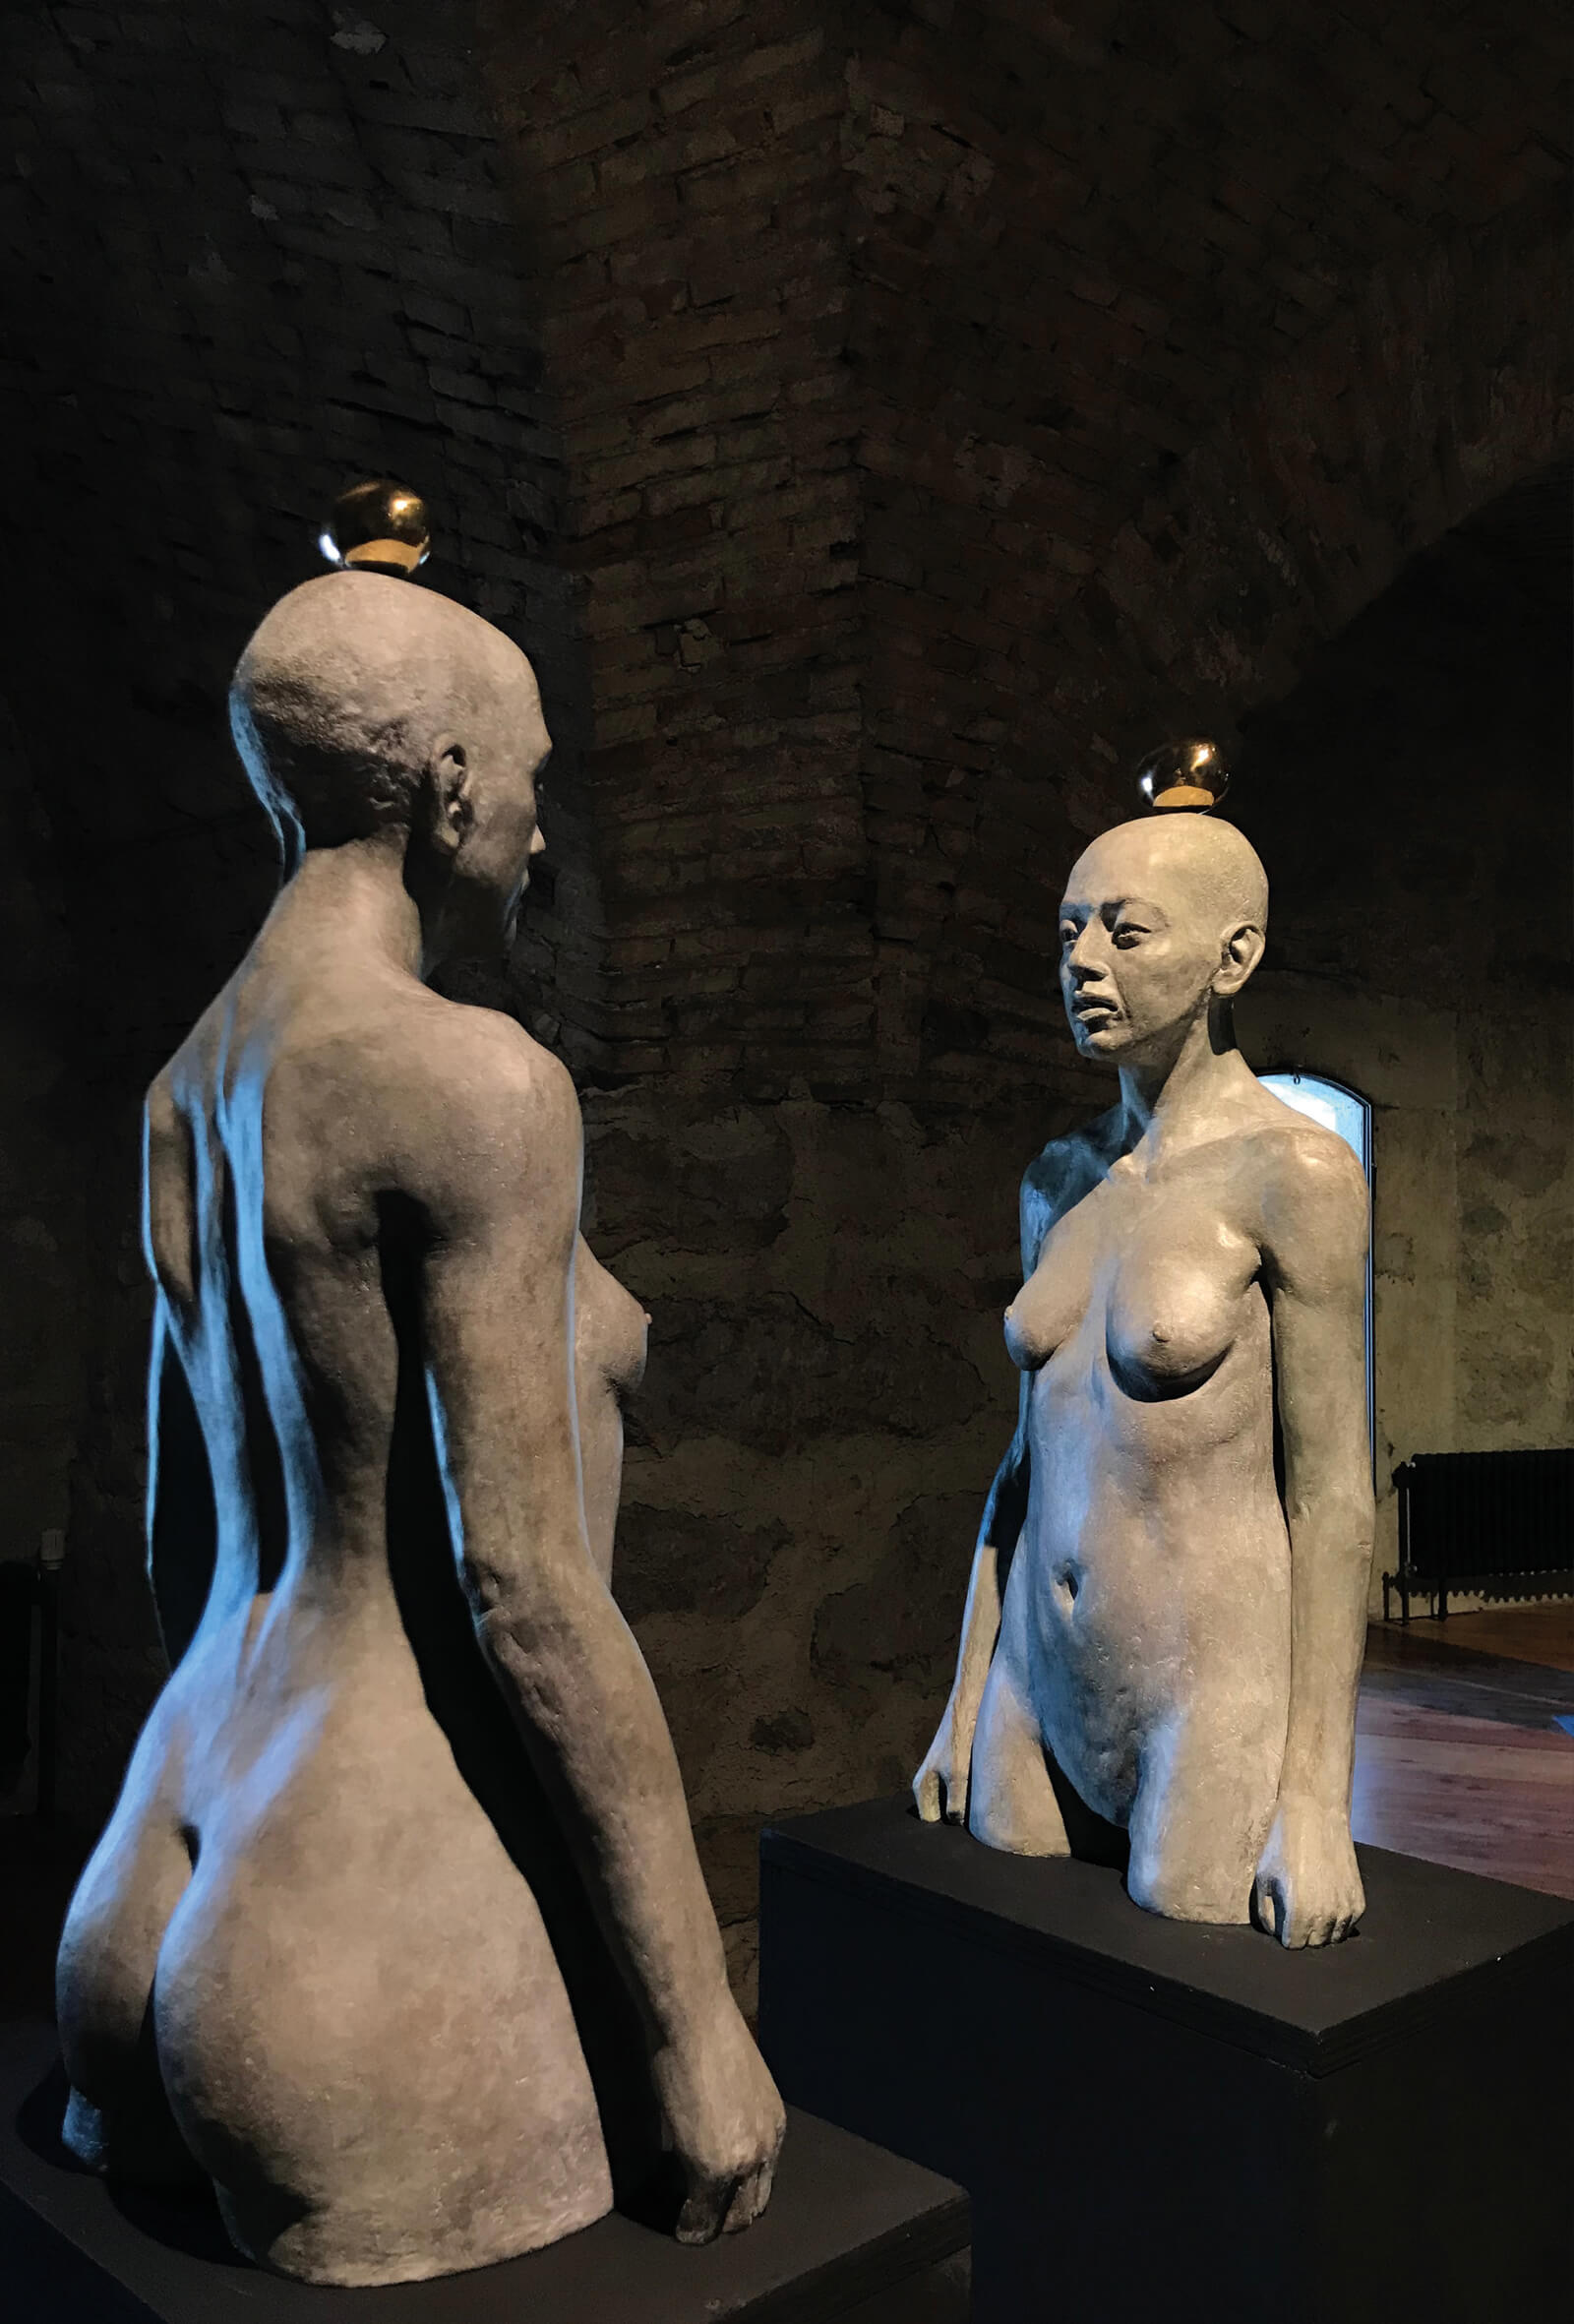 sculture in bronzo bianco raffiguranti due busti di donna, dell'artista Laura Marcolini, esposte in occasione della mostra Fragile presso il forte alto di nago. Allestimento spazio espositivo a cura dello studio grafico diade di arco-trento.